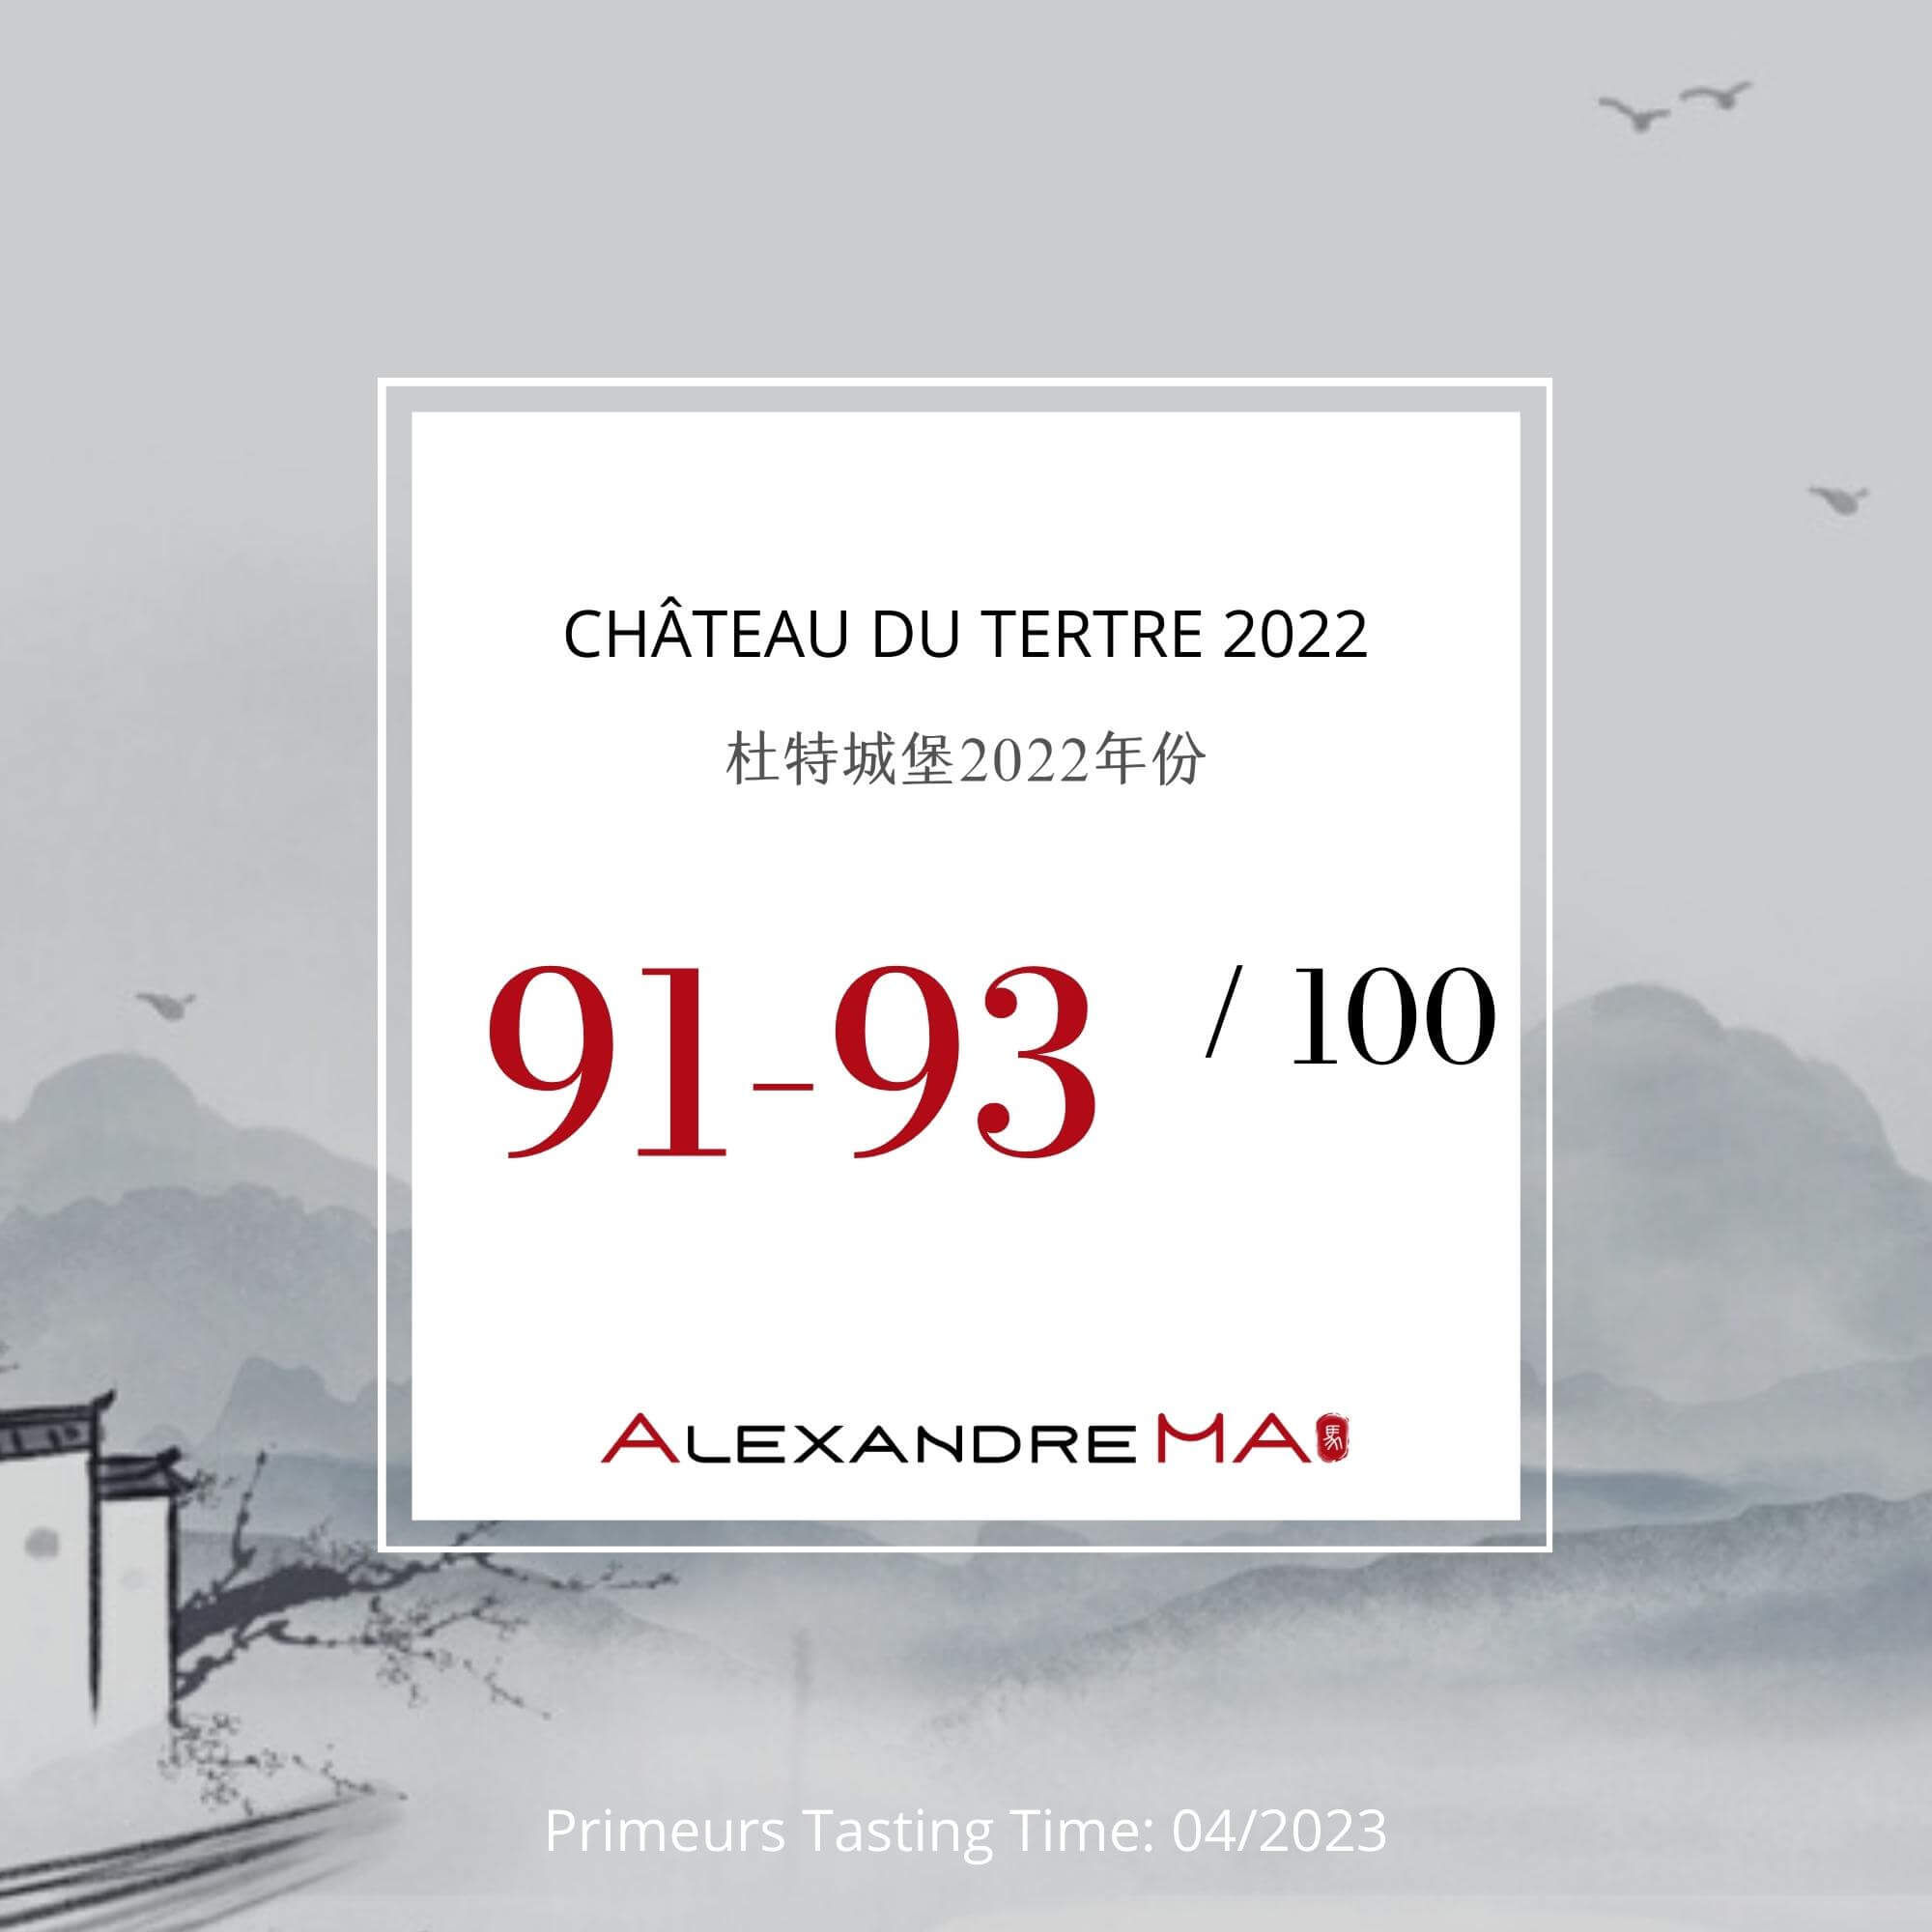 Château du Tertre 2022 Primeurs - Alexandre MA